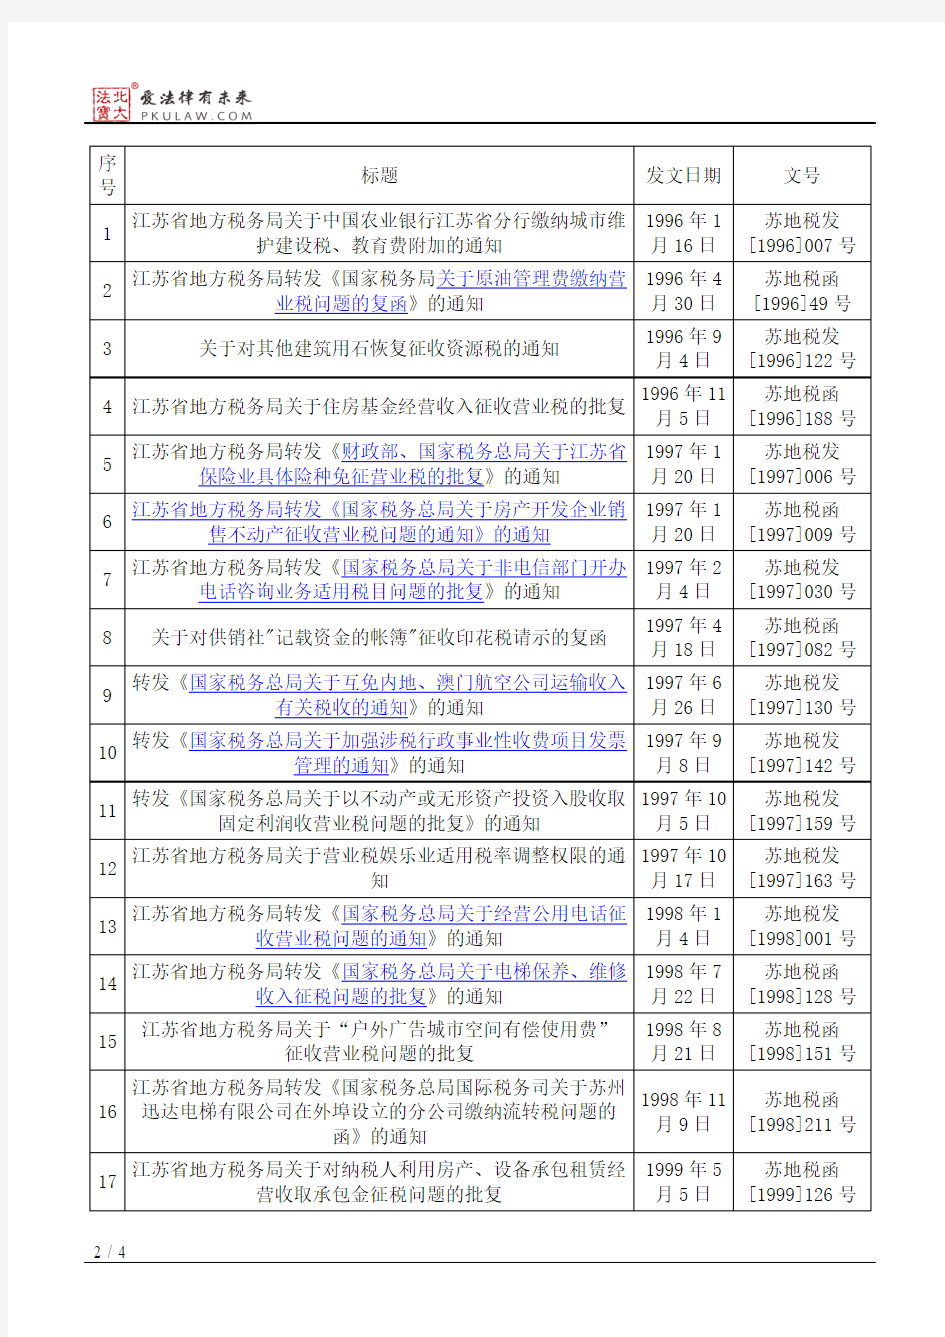 江苏省地方税务局关于公布现行有效的税收规范性文件目录的公告(2014)